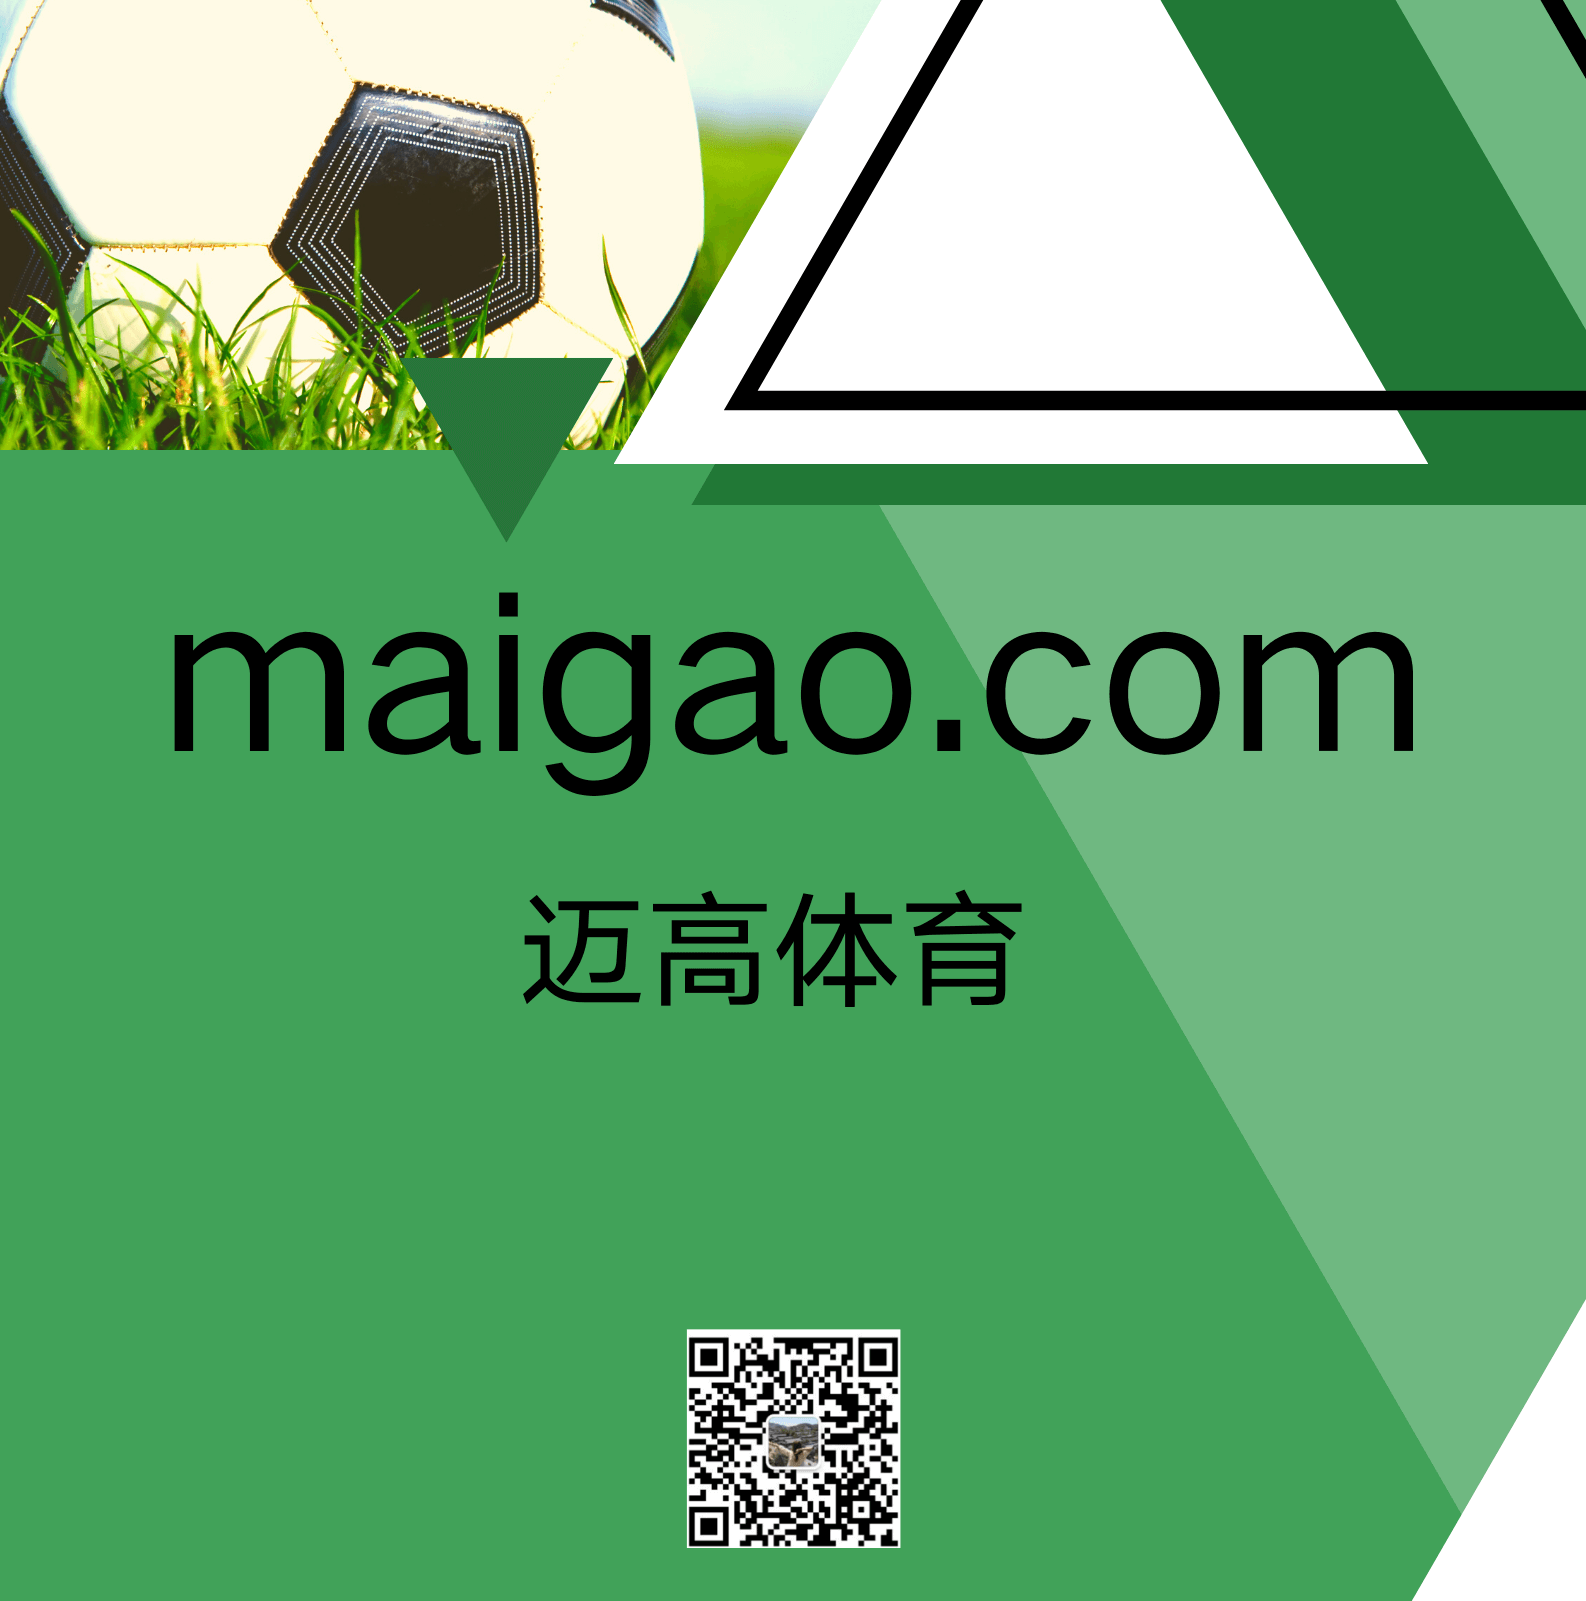 maigao.com